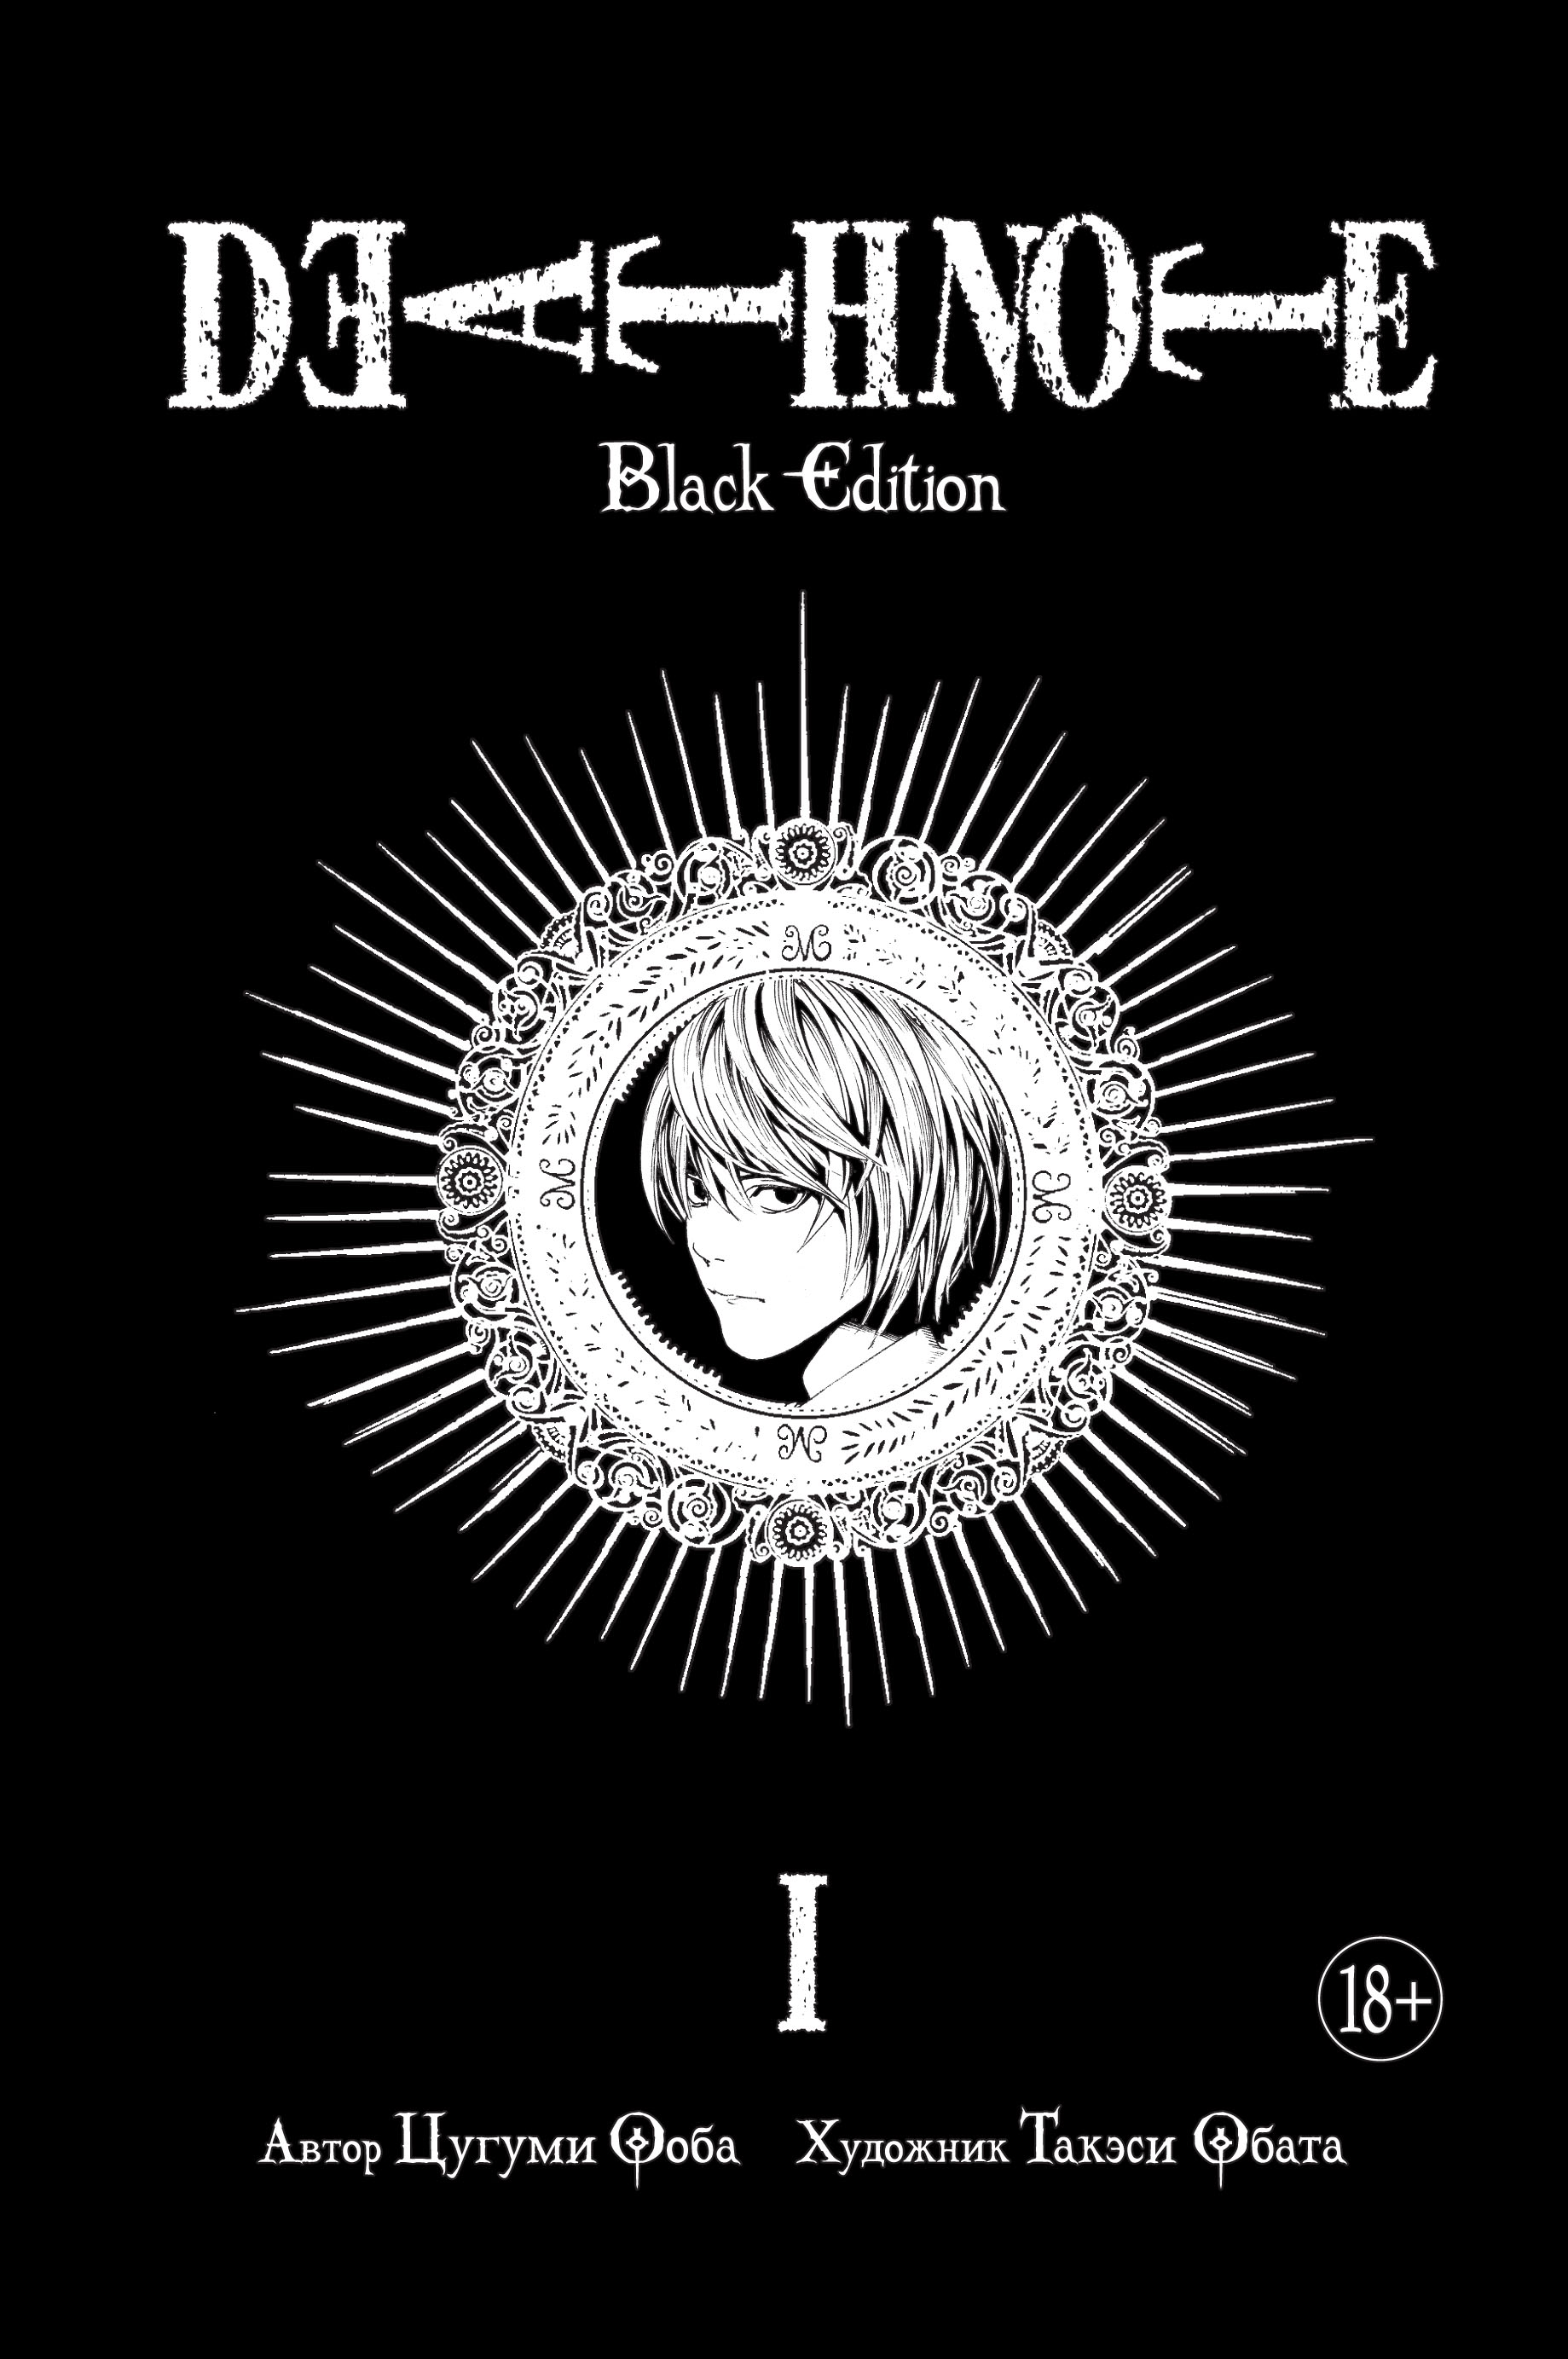 Ооба Цугуми Death Note. Black Edition. Книга 1